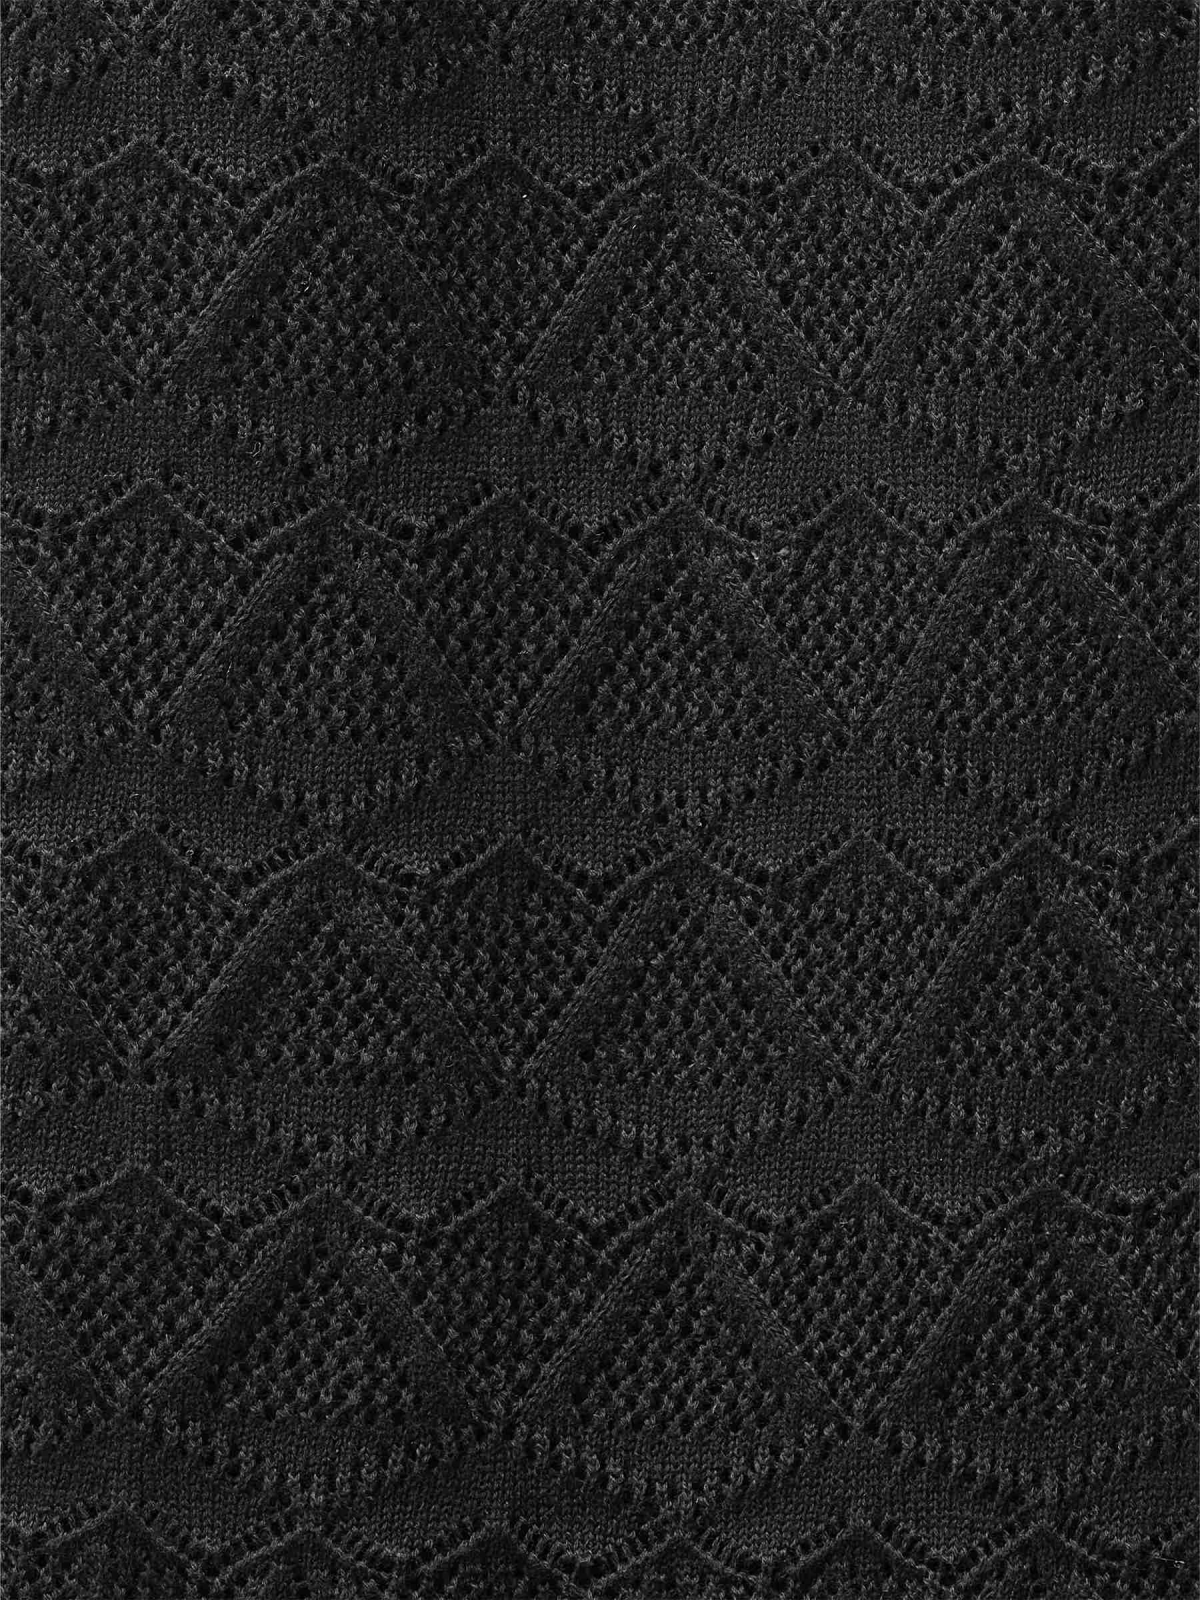 Pantalón flare de crochet negro vista detalle